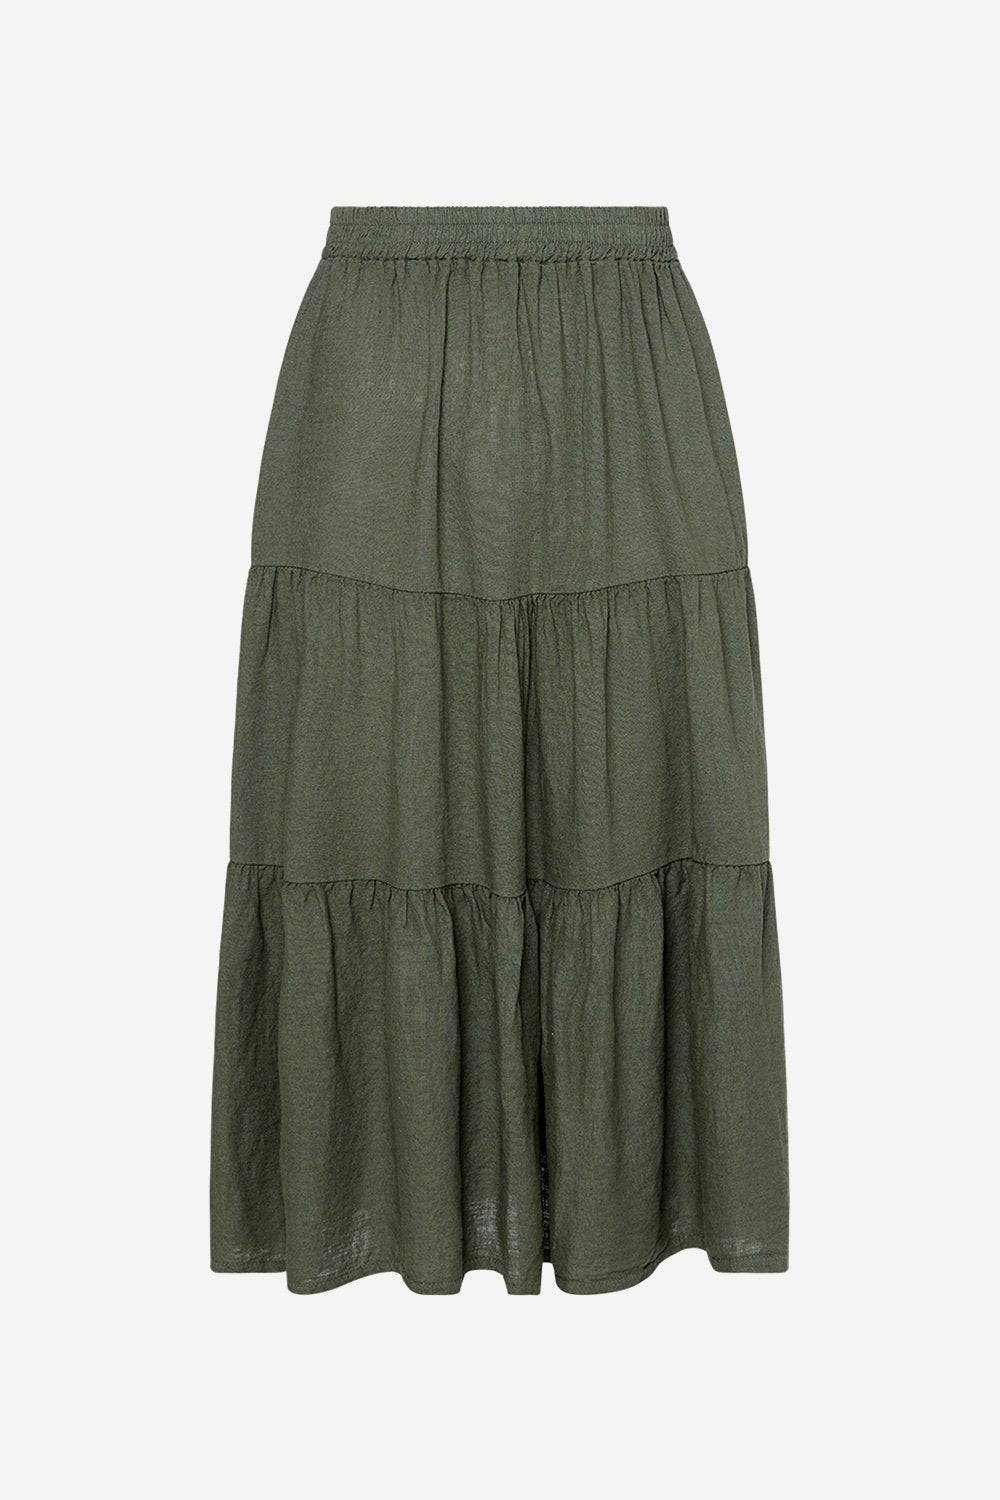 Jolene Skirt Linen Mix Army